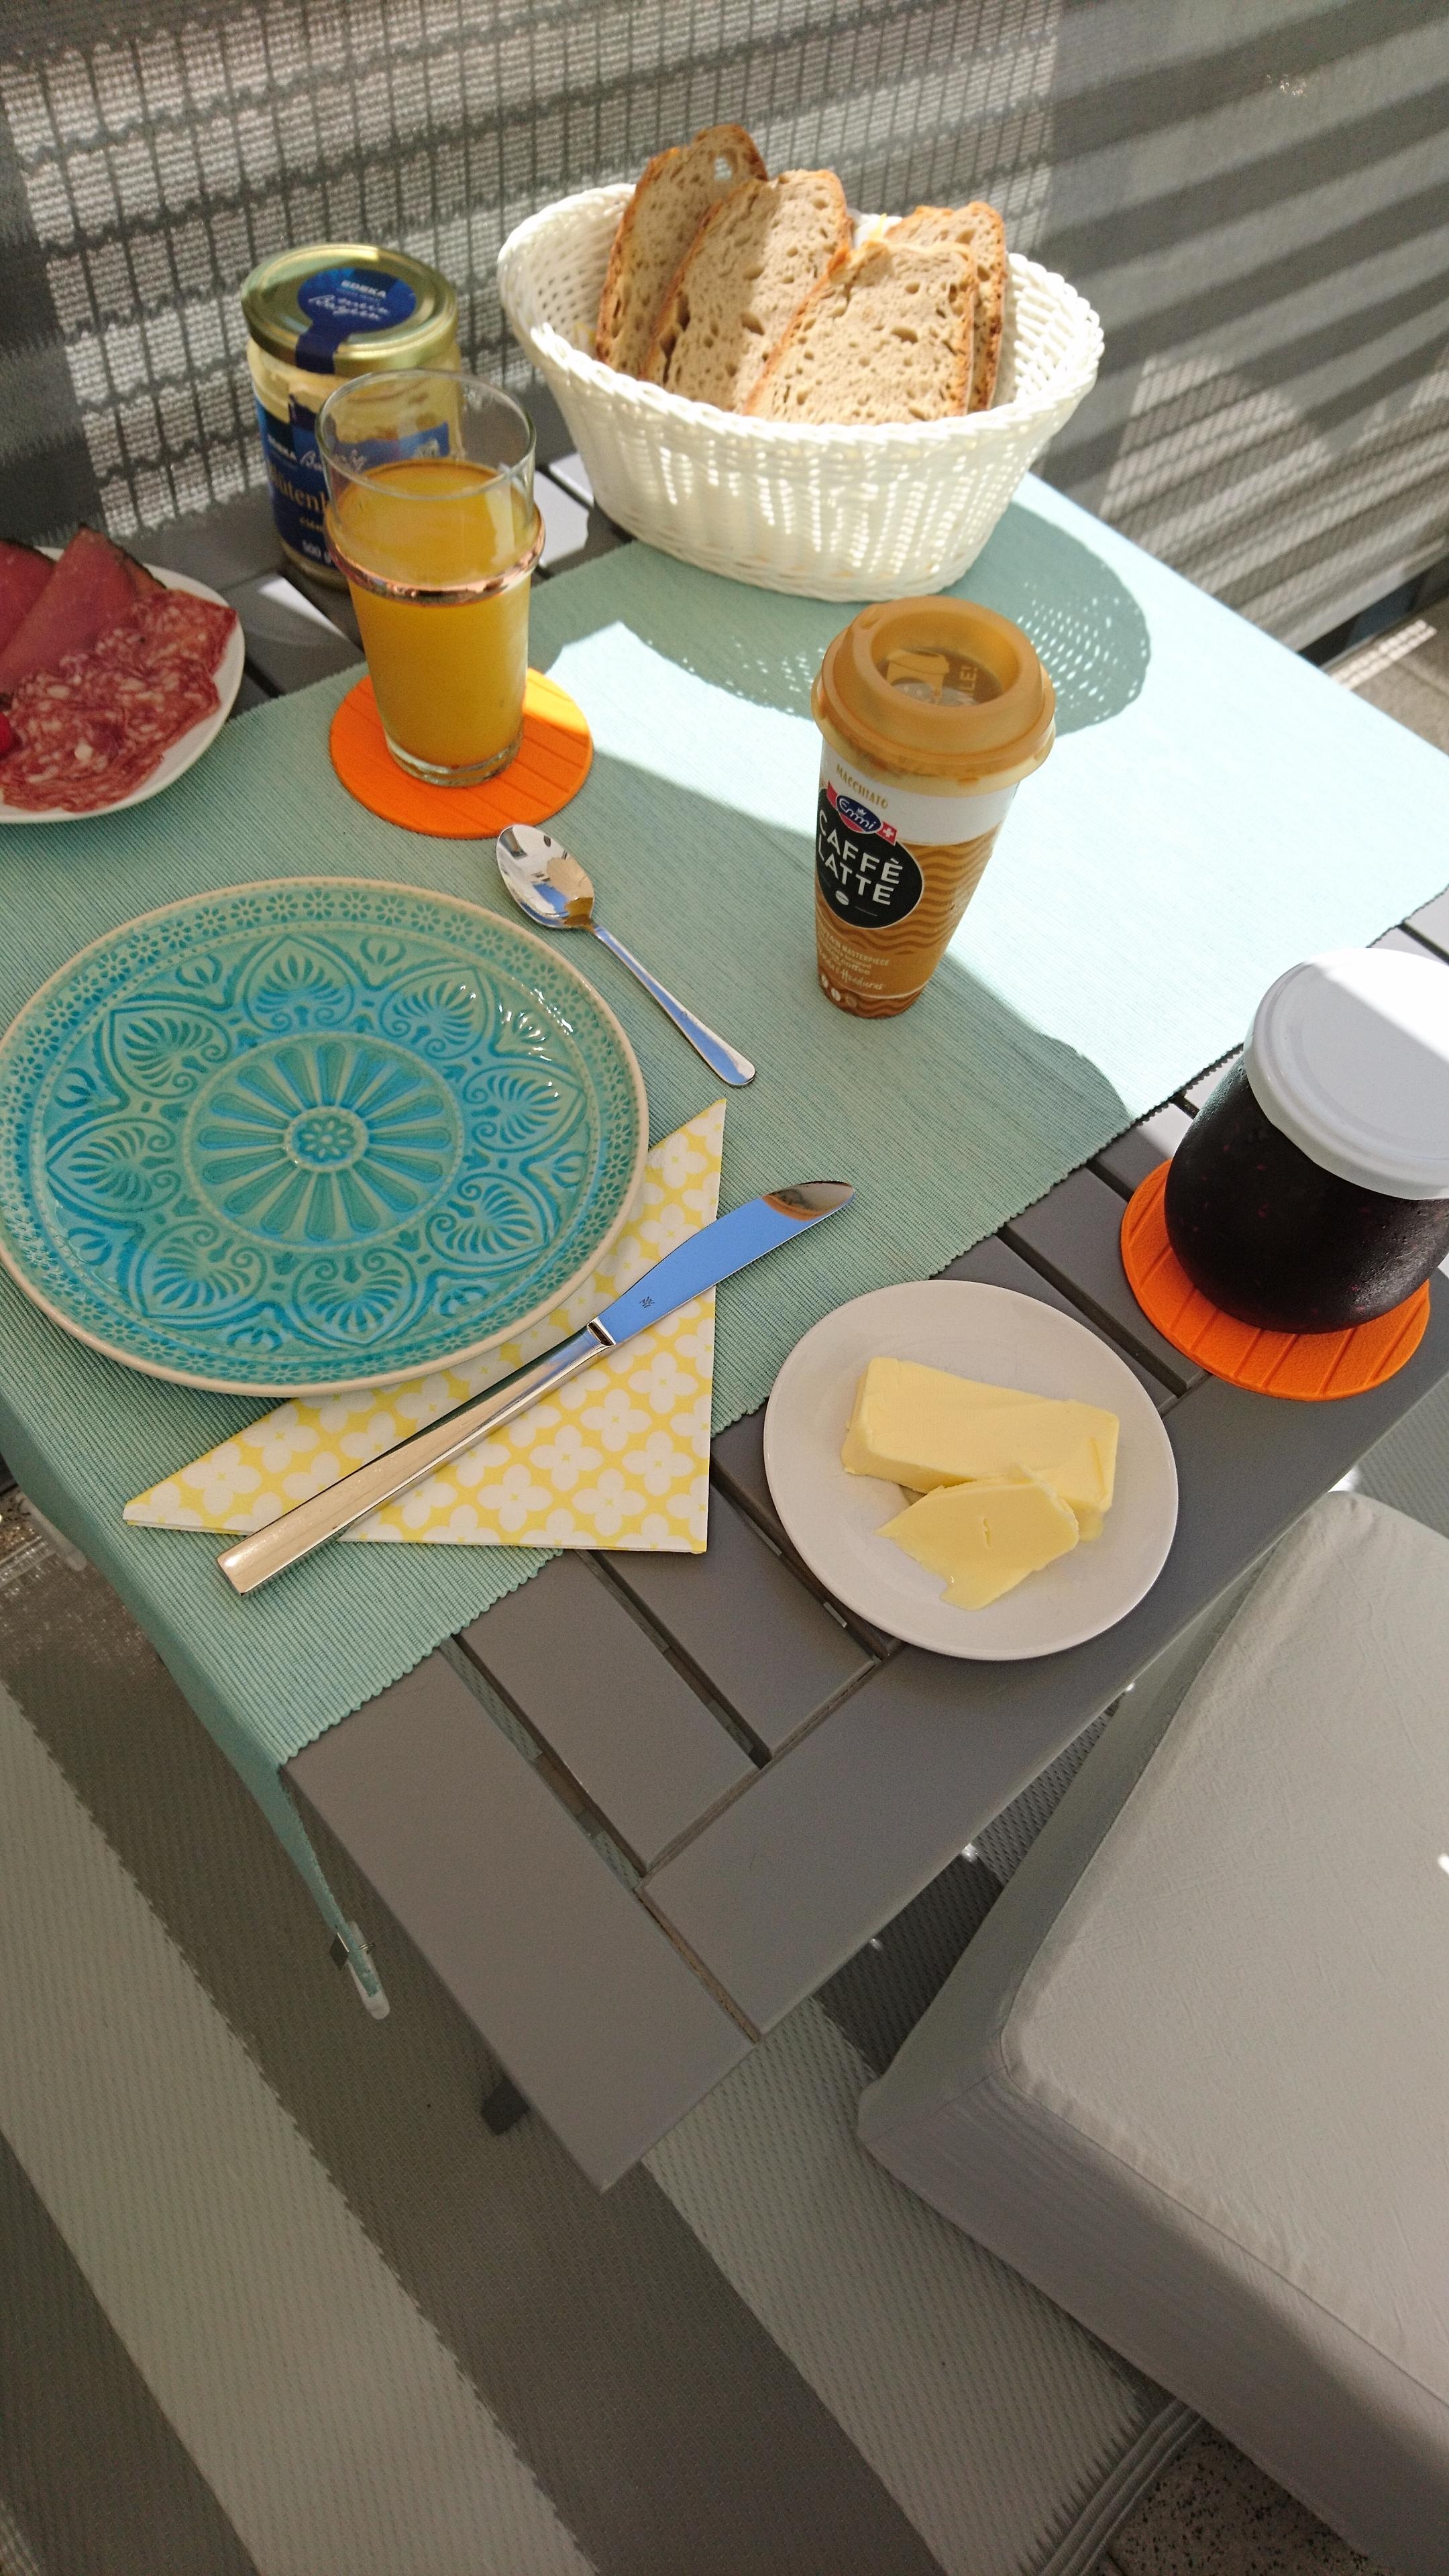 #Frühstück auf dem #Balkon
mit der selbstgemachten Waldfrucht Marmelade meiner lieben Nachbarin ☕

#türkis 